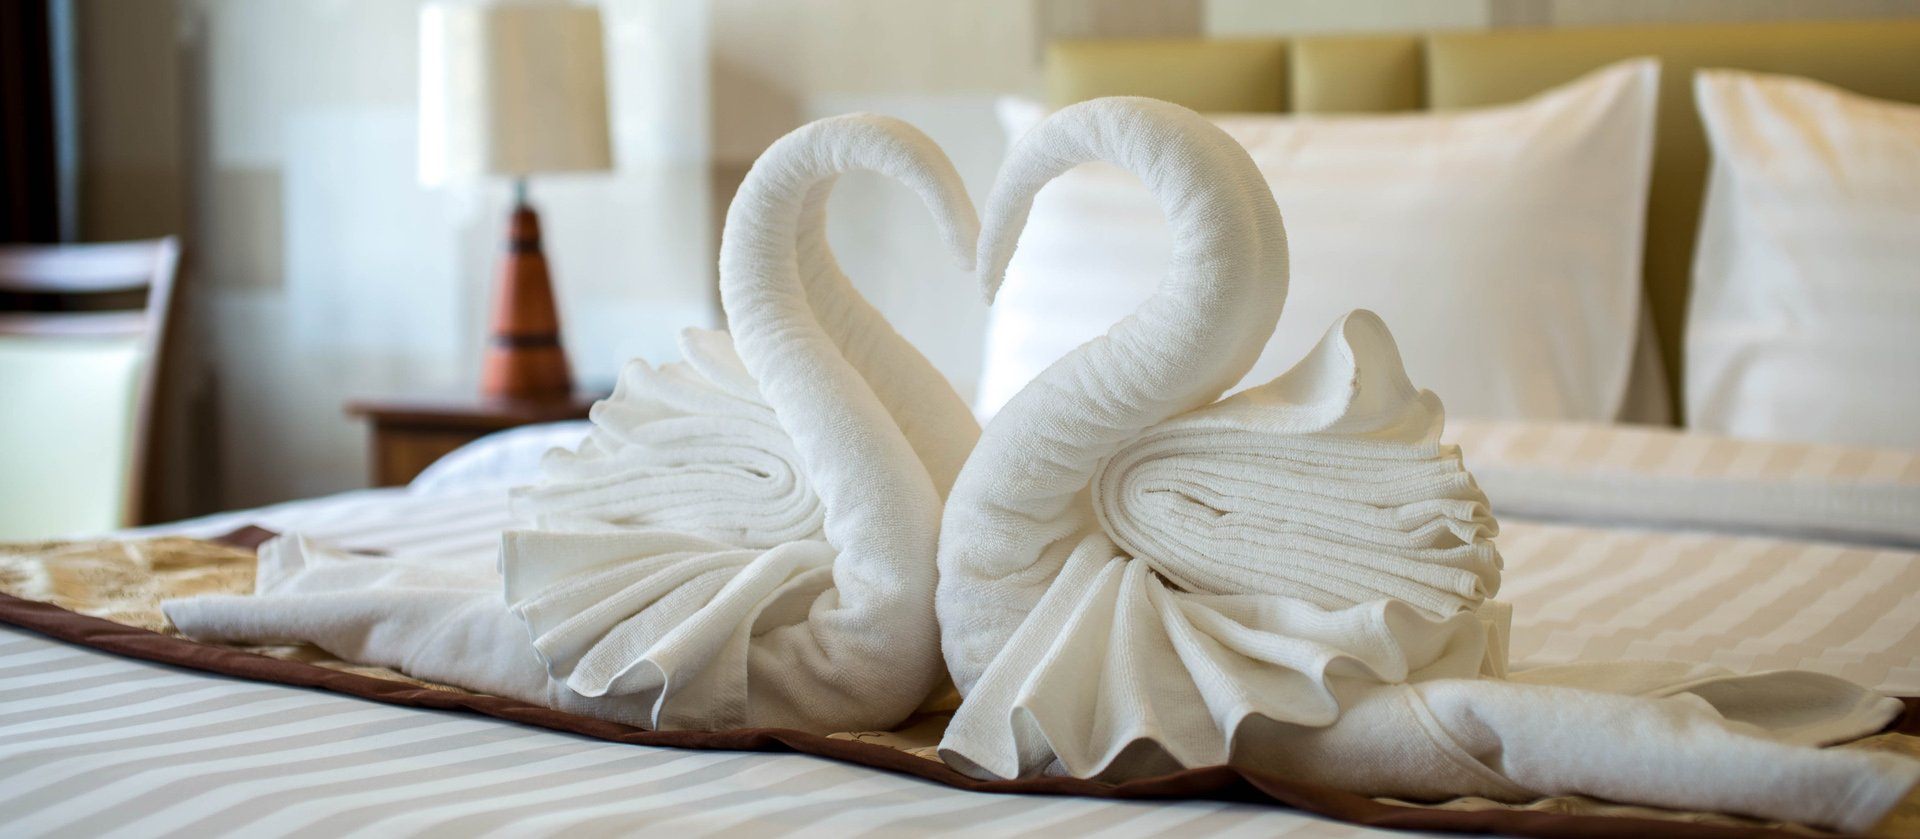 как красиво уложить полотенце в гостинице